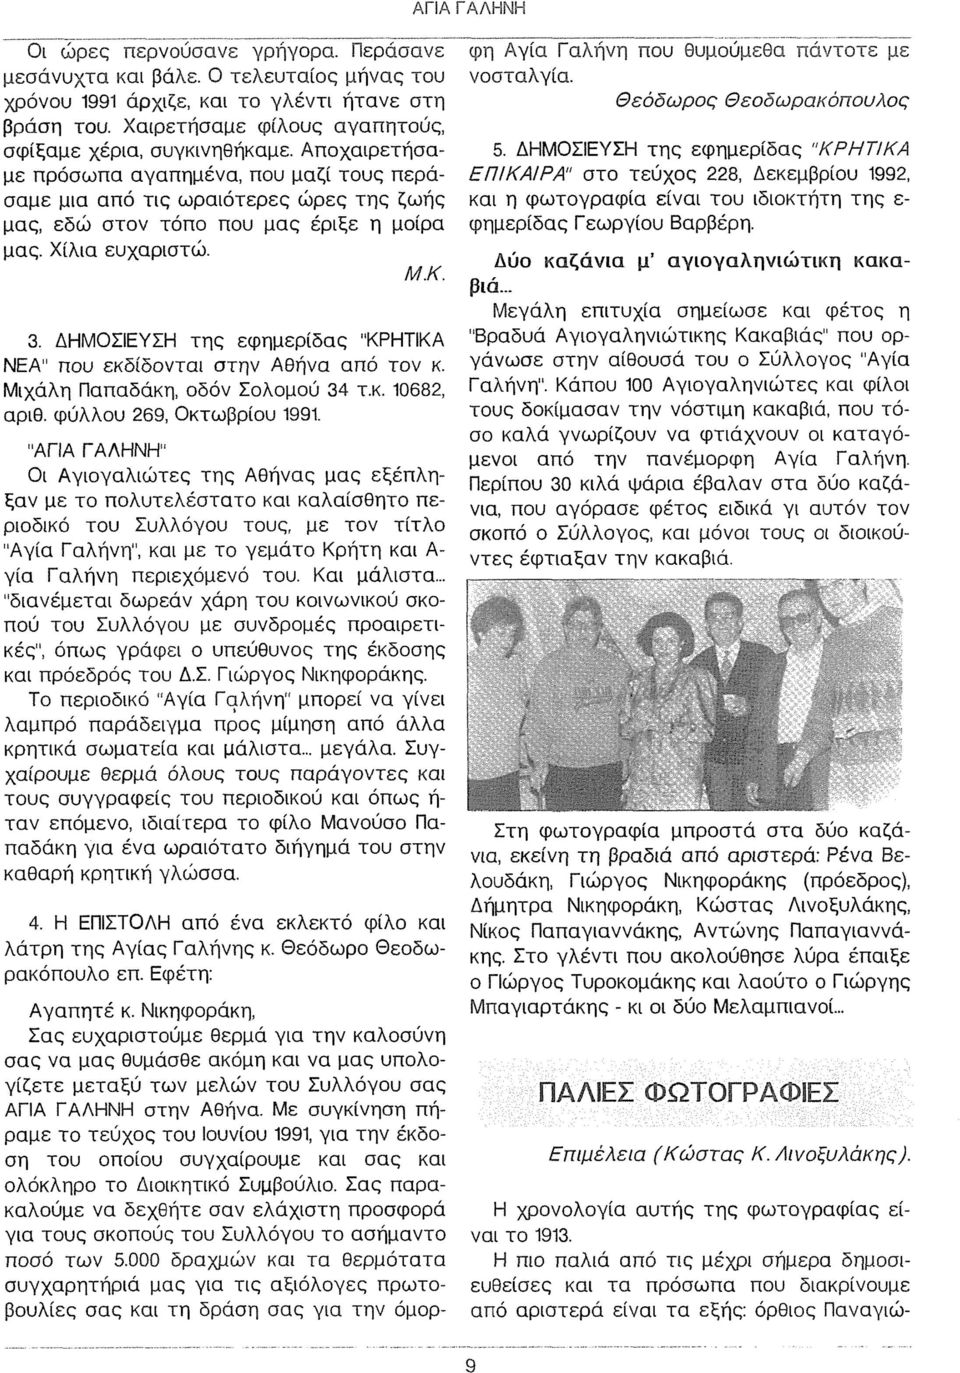 ΔΗΜΟΣΙΕΥΣΗ της εφημερίδας "ΚΡΗΤΙΚΑ ΝΕΑ" που εκδίδονται στην Αθήνα από τον κ. Μιχάλη Παπαδάκη, οδόν Σολομού 34 τ.κ. 10682, αριθ. φύλλου 269, Οκτωβρίου 1991.